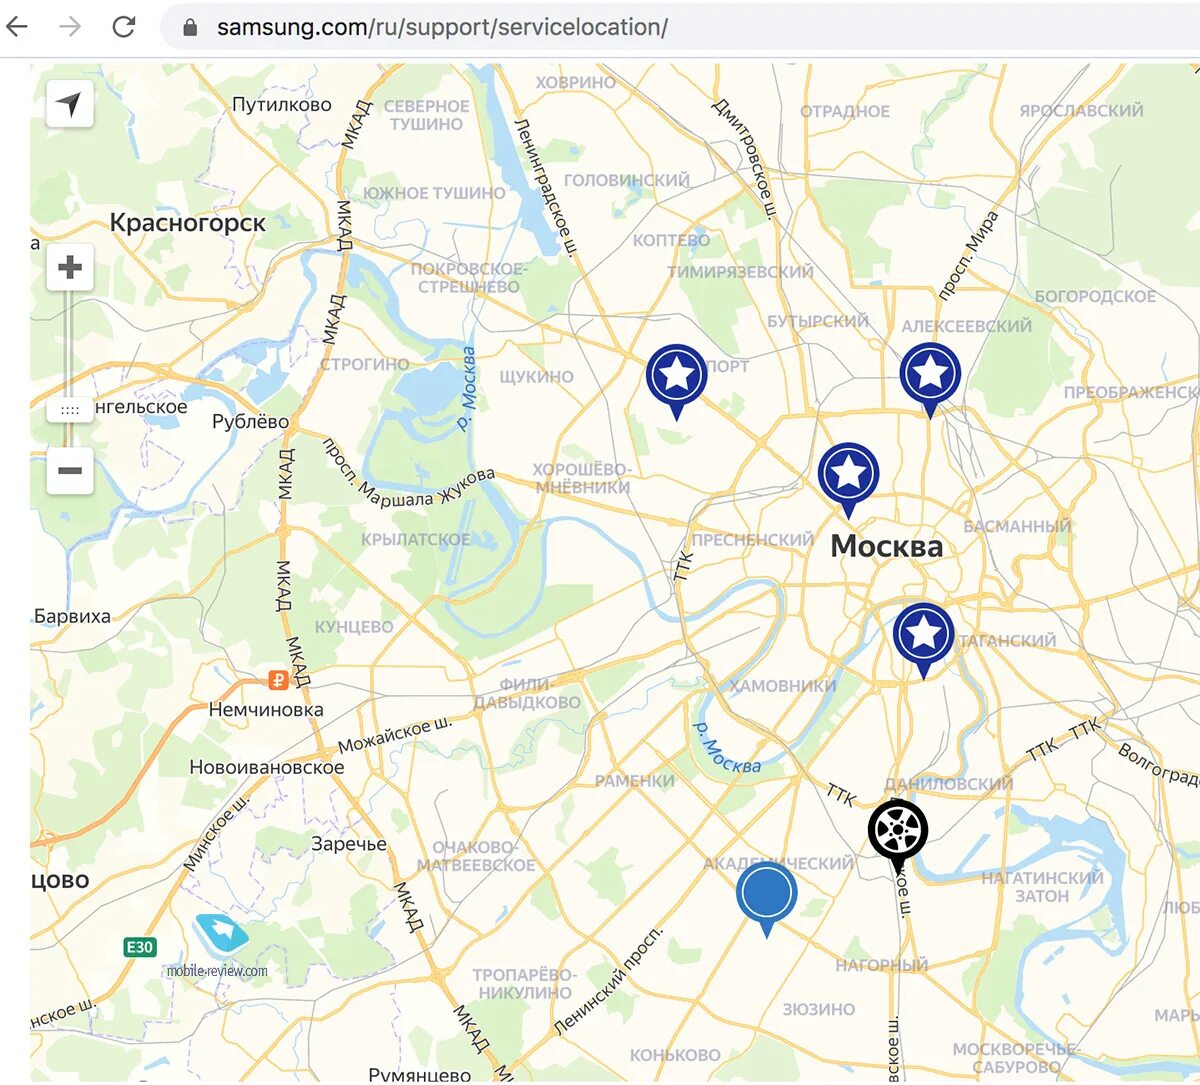 Фамилия адреса на карте москвы. Карта Москвы с магазинами. Сервисный центр Samsung в Москве адреса. Карта сервисных центров. Карта магазина.